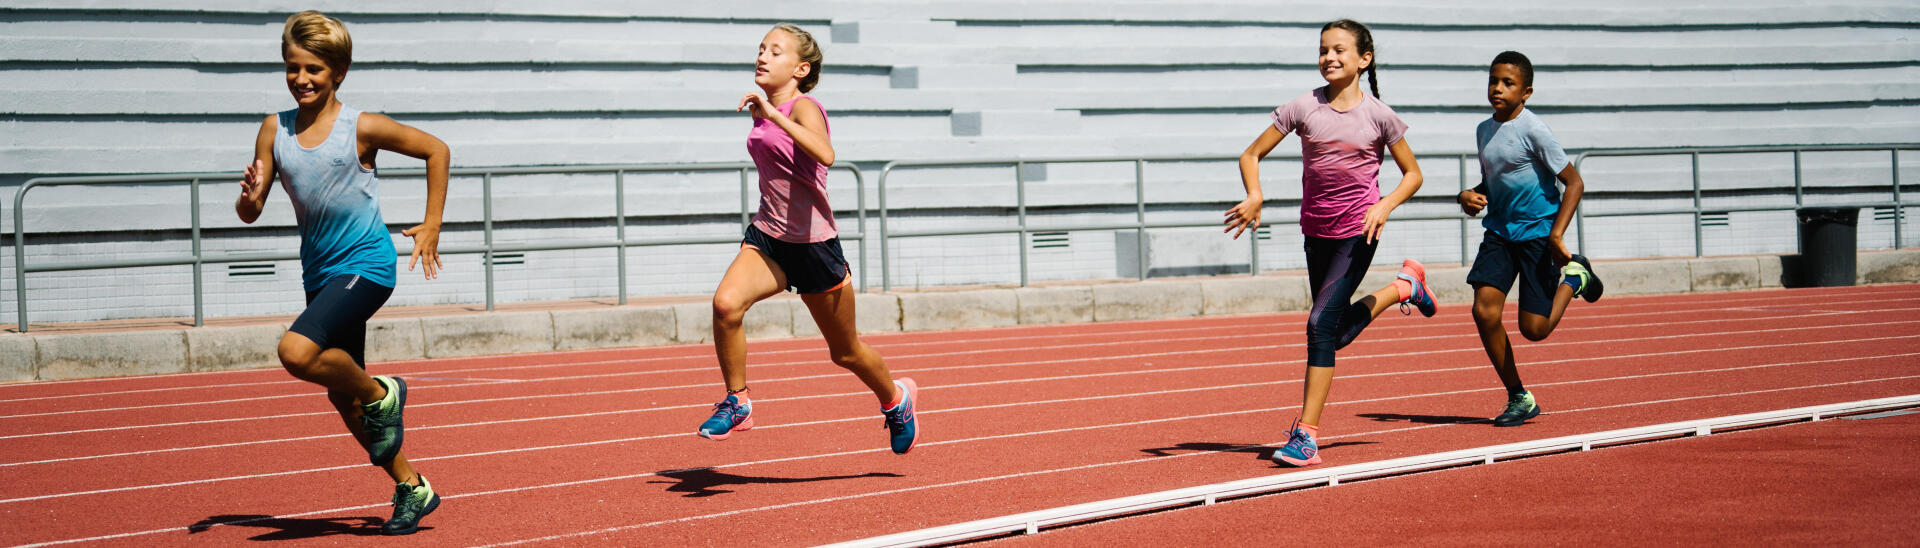 de 8 a 12 ans, le sport peut devenir plus compétitif